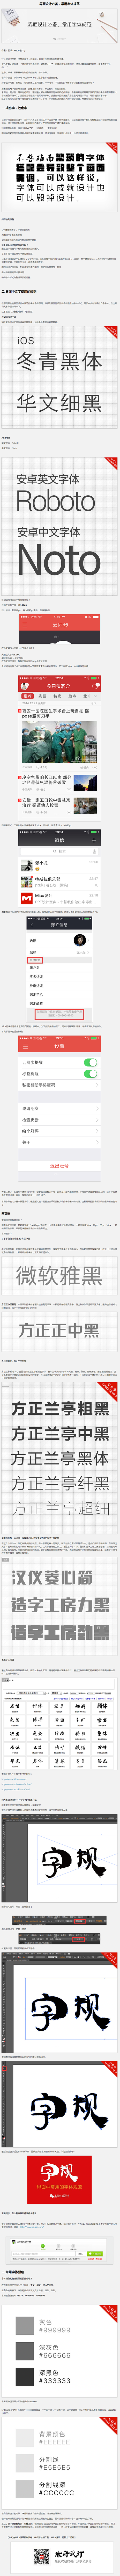 界面设计必备，常用字体规范-UI中国-专...